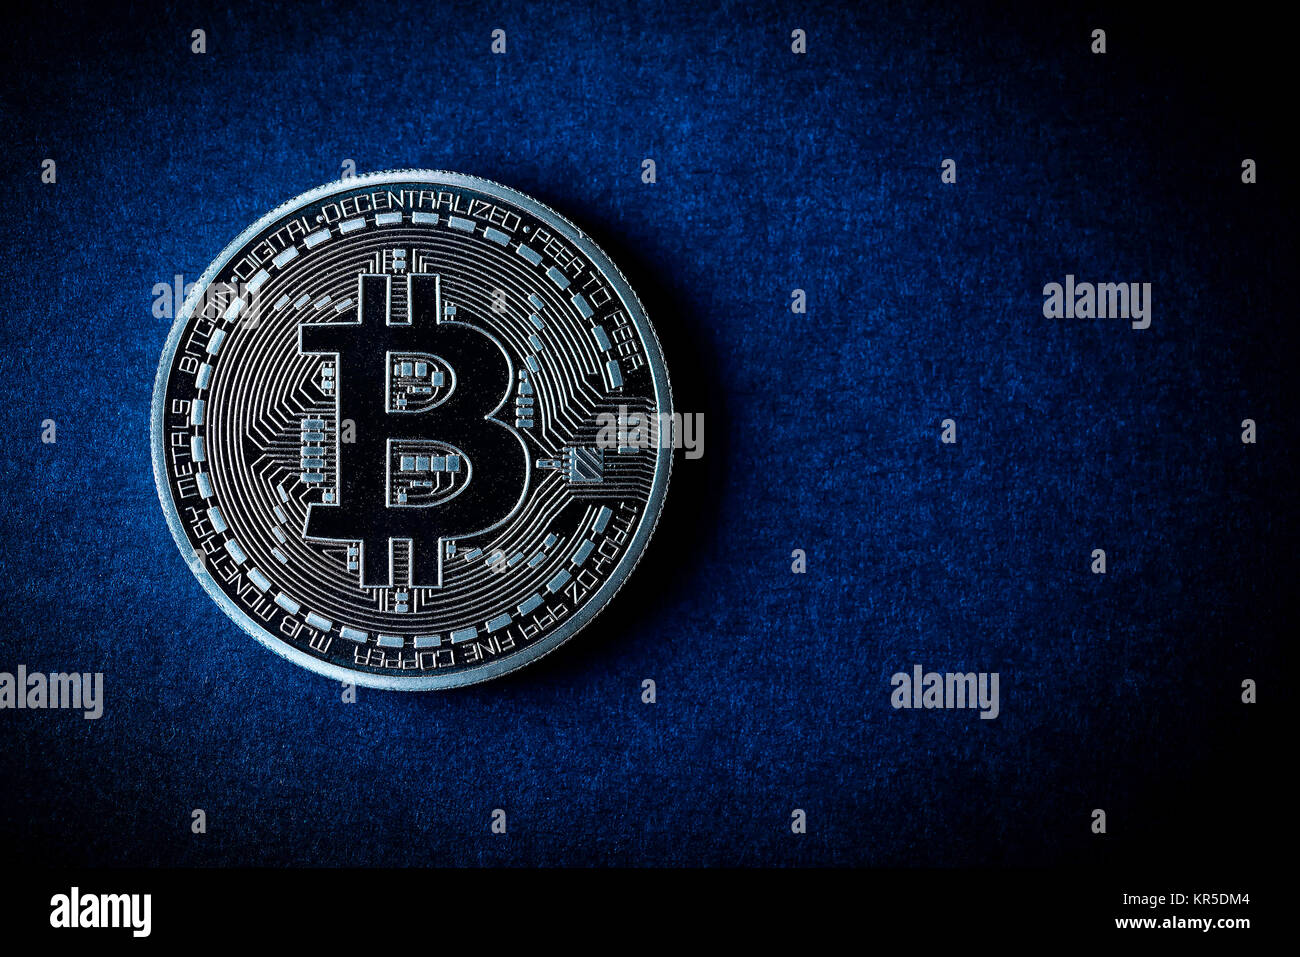 Coin with Bitcoin sign, Münze mit Bitcoin-Zeichen Stock Photo